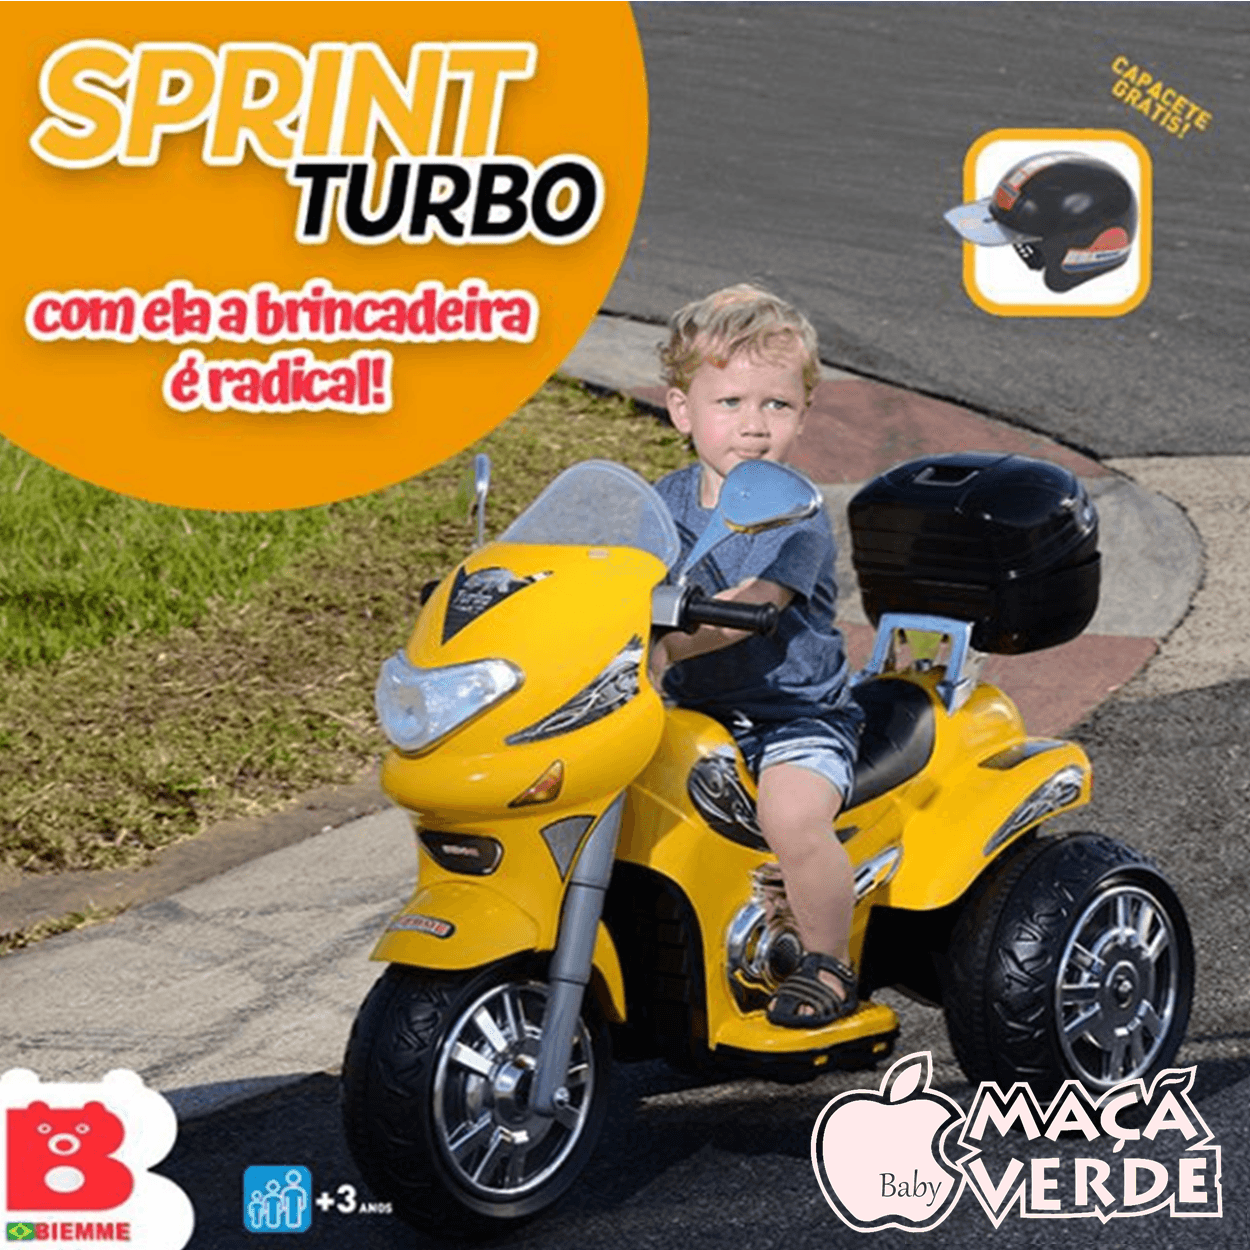 Moto Elétrica Infantil Speed Choper Homeplay Pink com Buzina e Som Motor -  247 - Novo Mundo